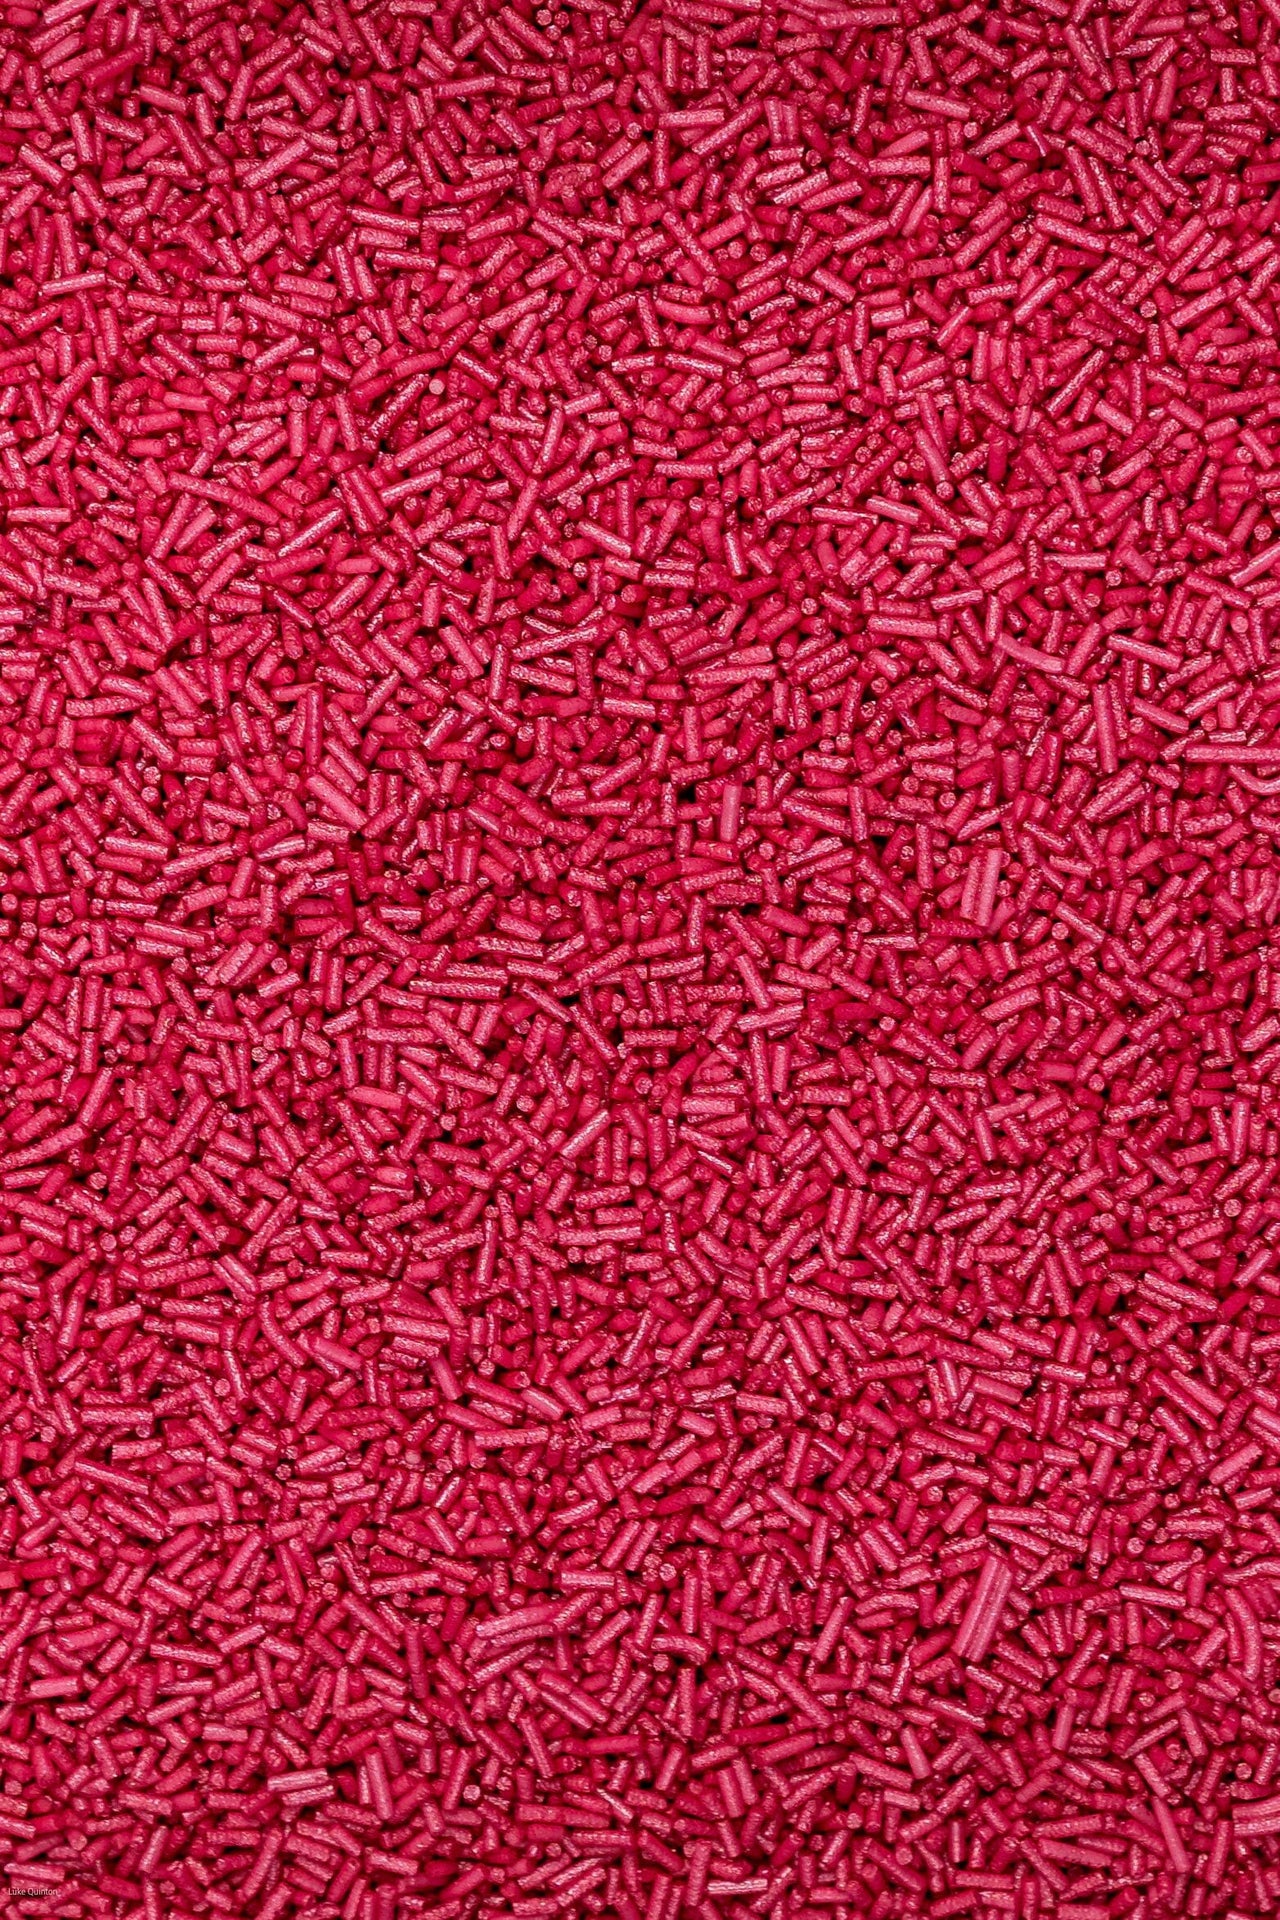 Glimmer Strands - Deep Pink (No E171) Sprinkles SPRINKLY